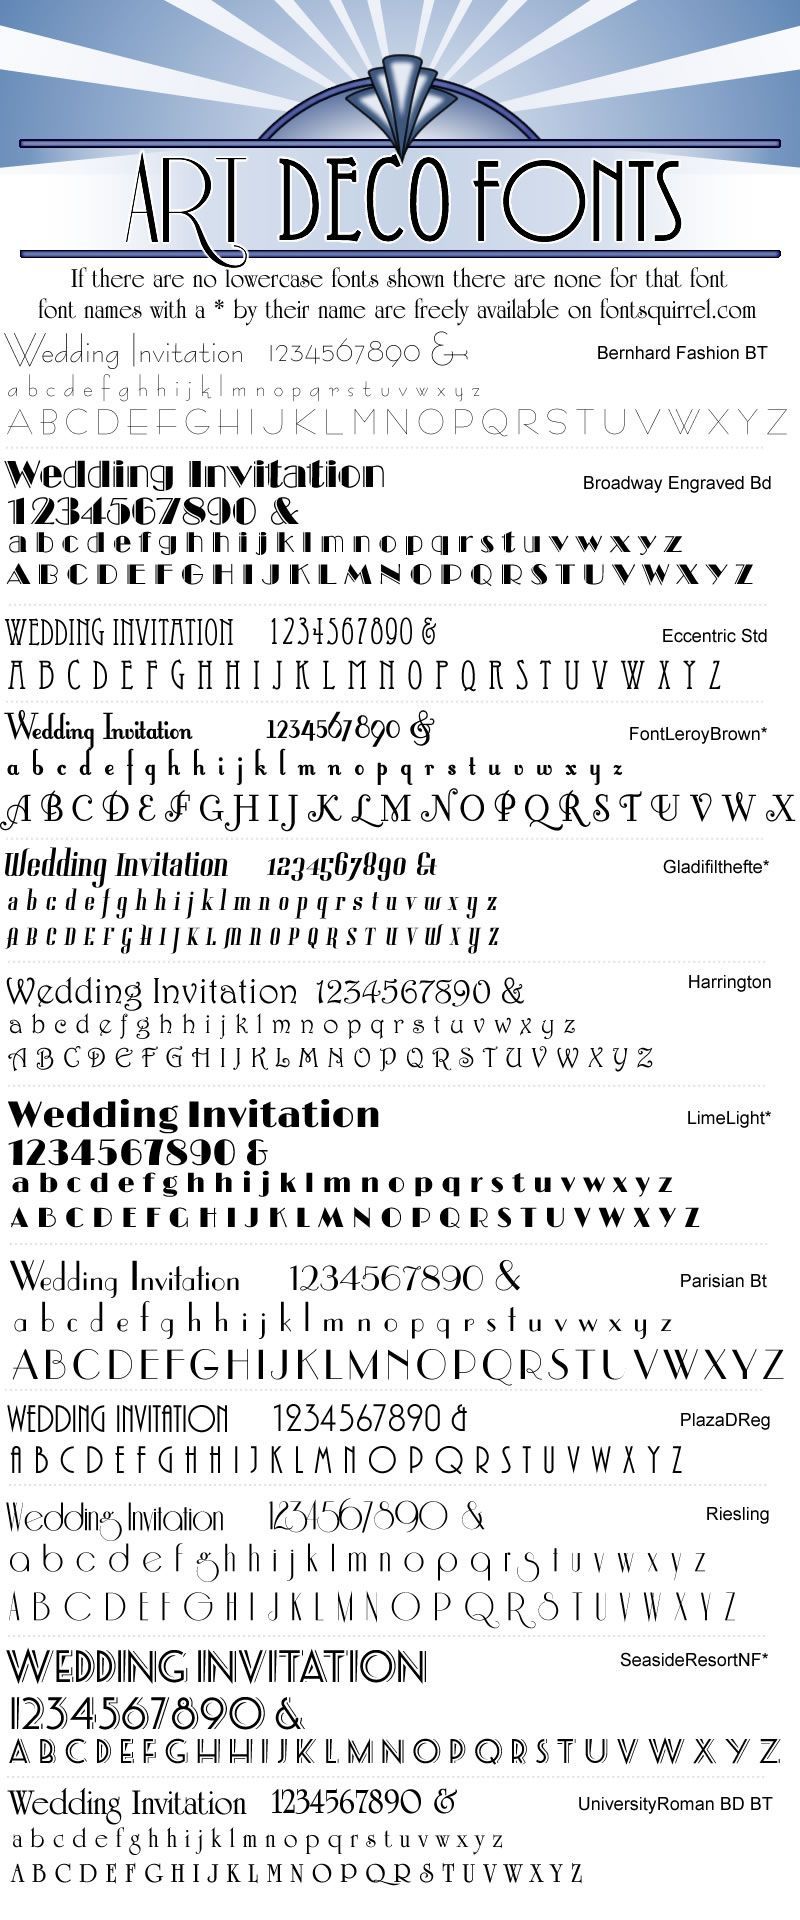 Art Deco fonts for wedding invitations